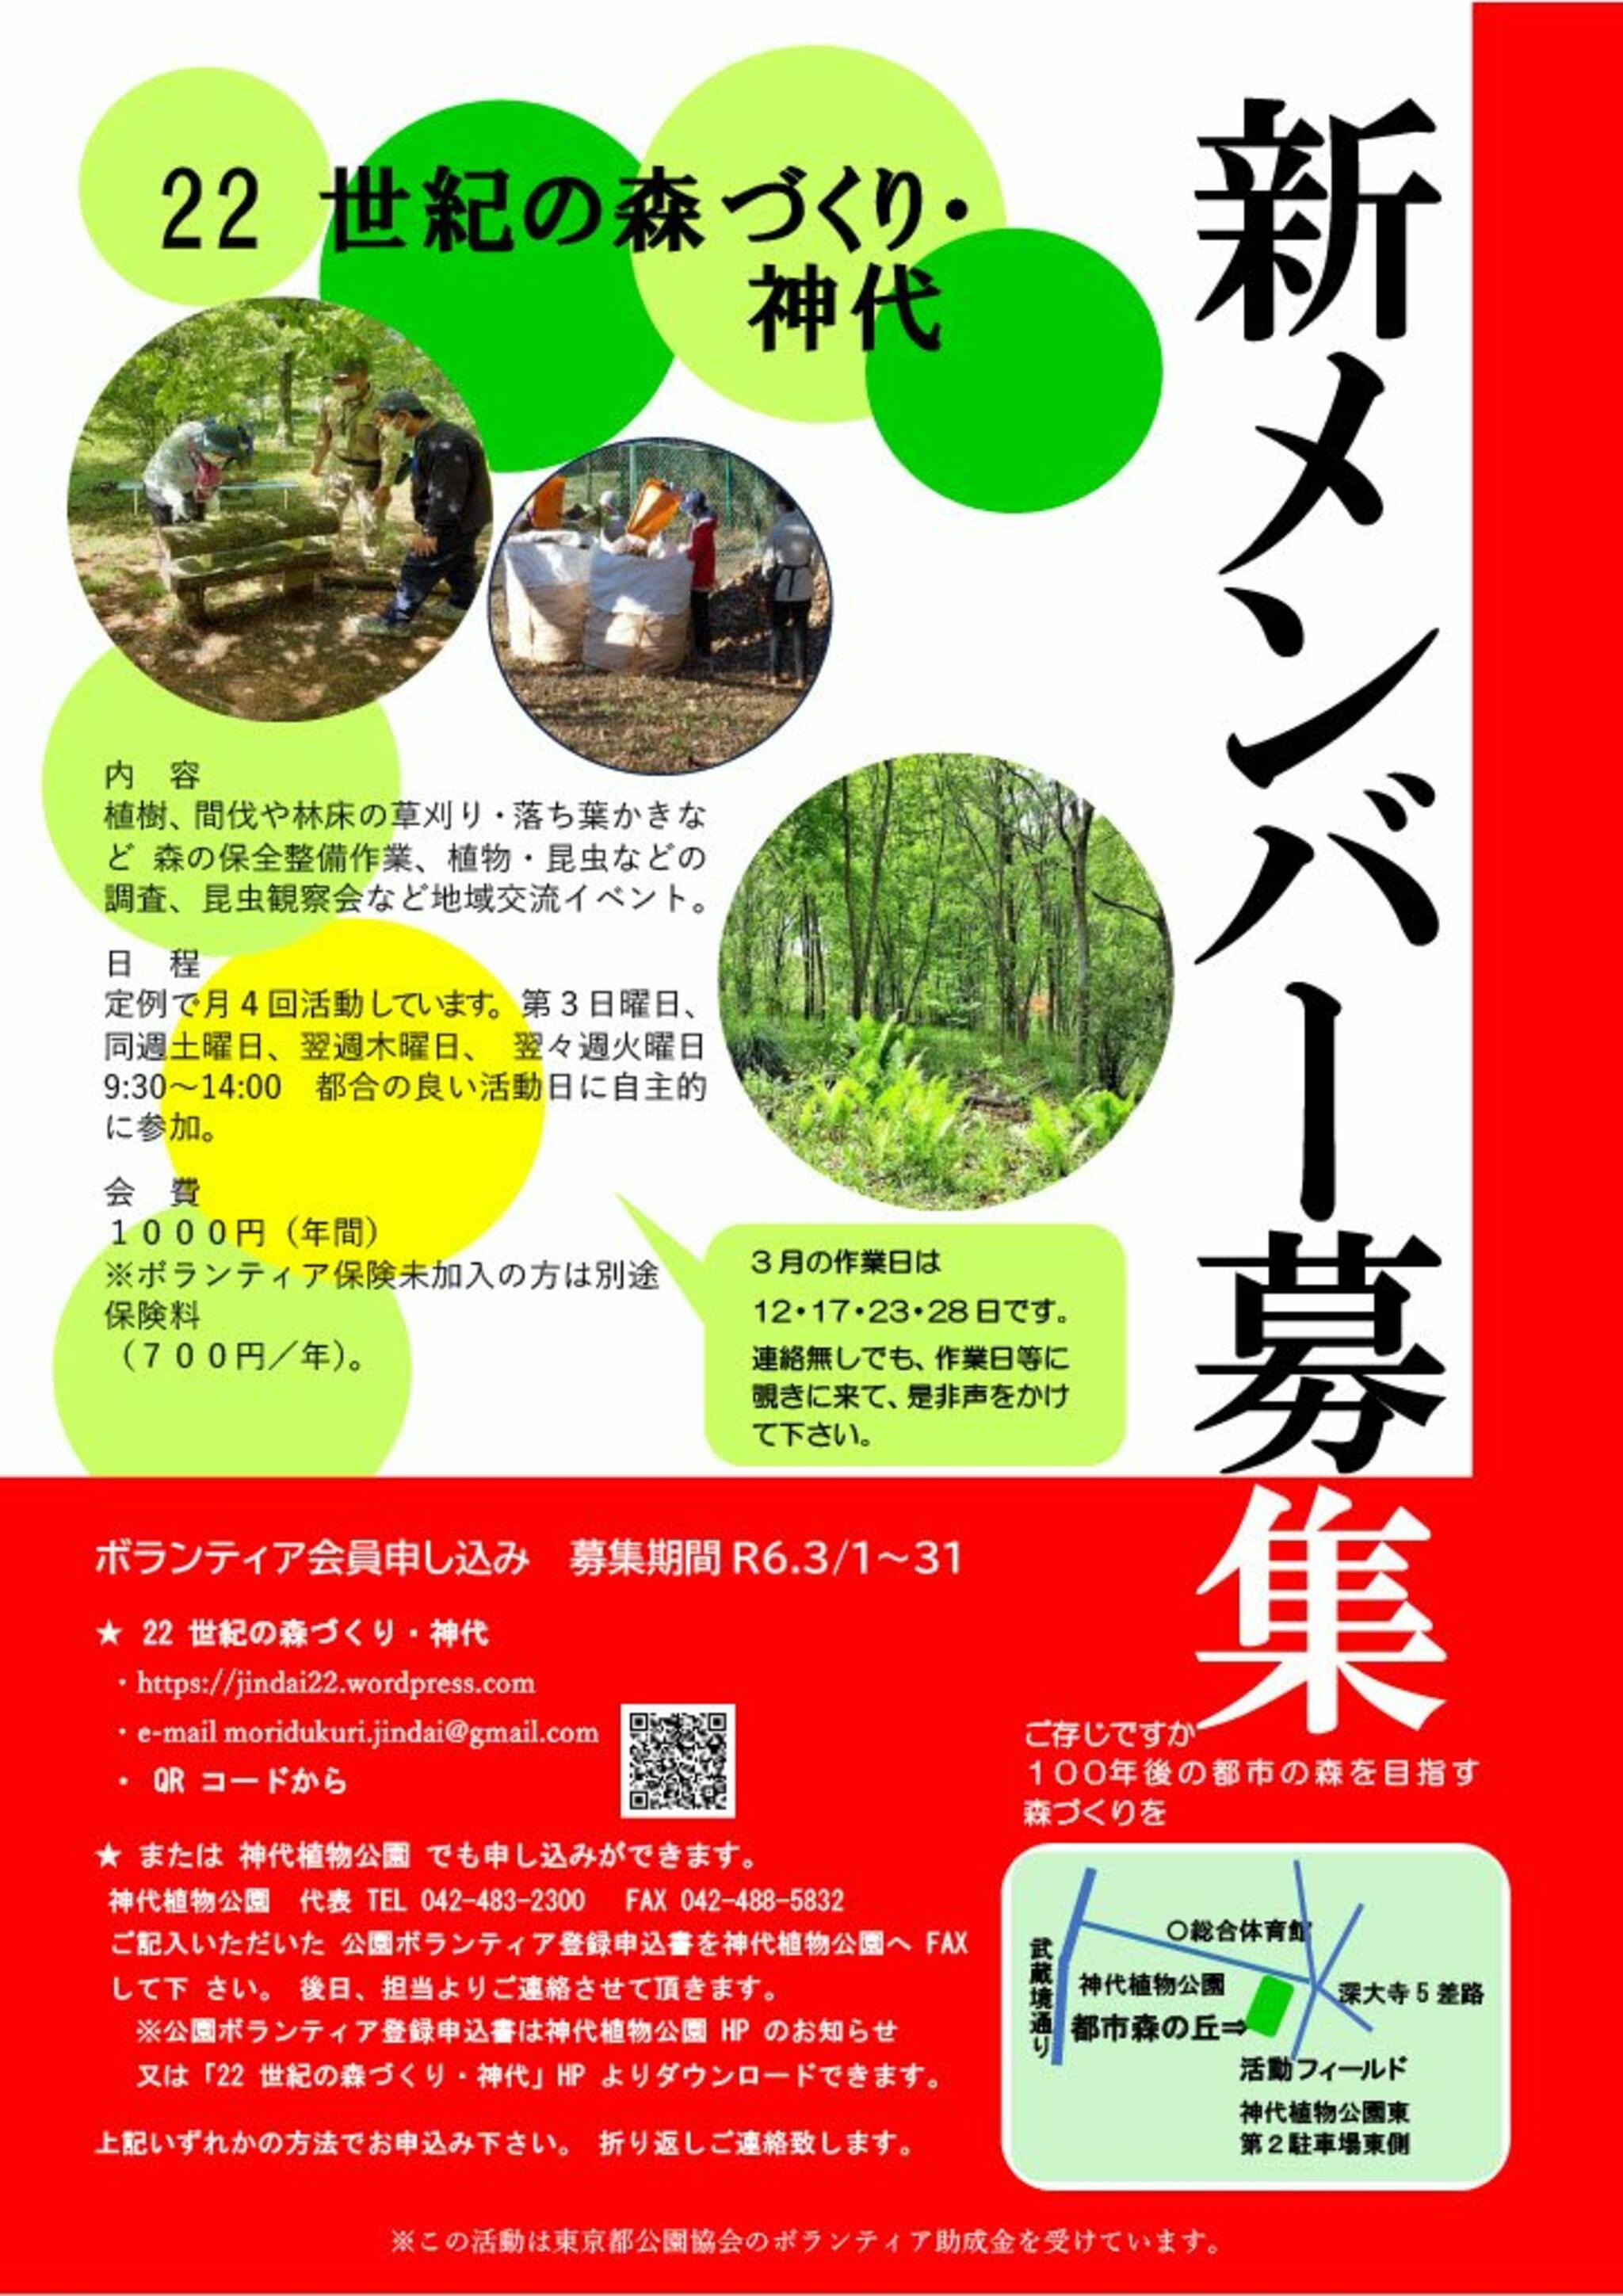 神代植物公園からのお知らせ(「22世紀の森づくり・神代」新メンバー募集のお知らせ)に関する写真